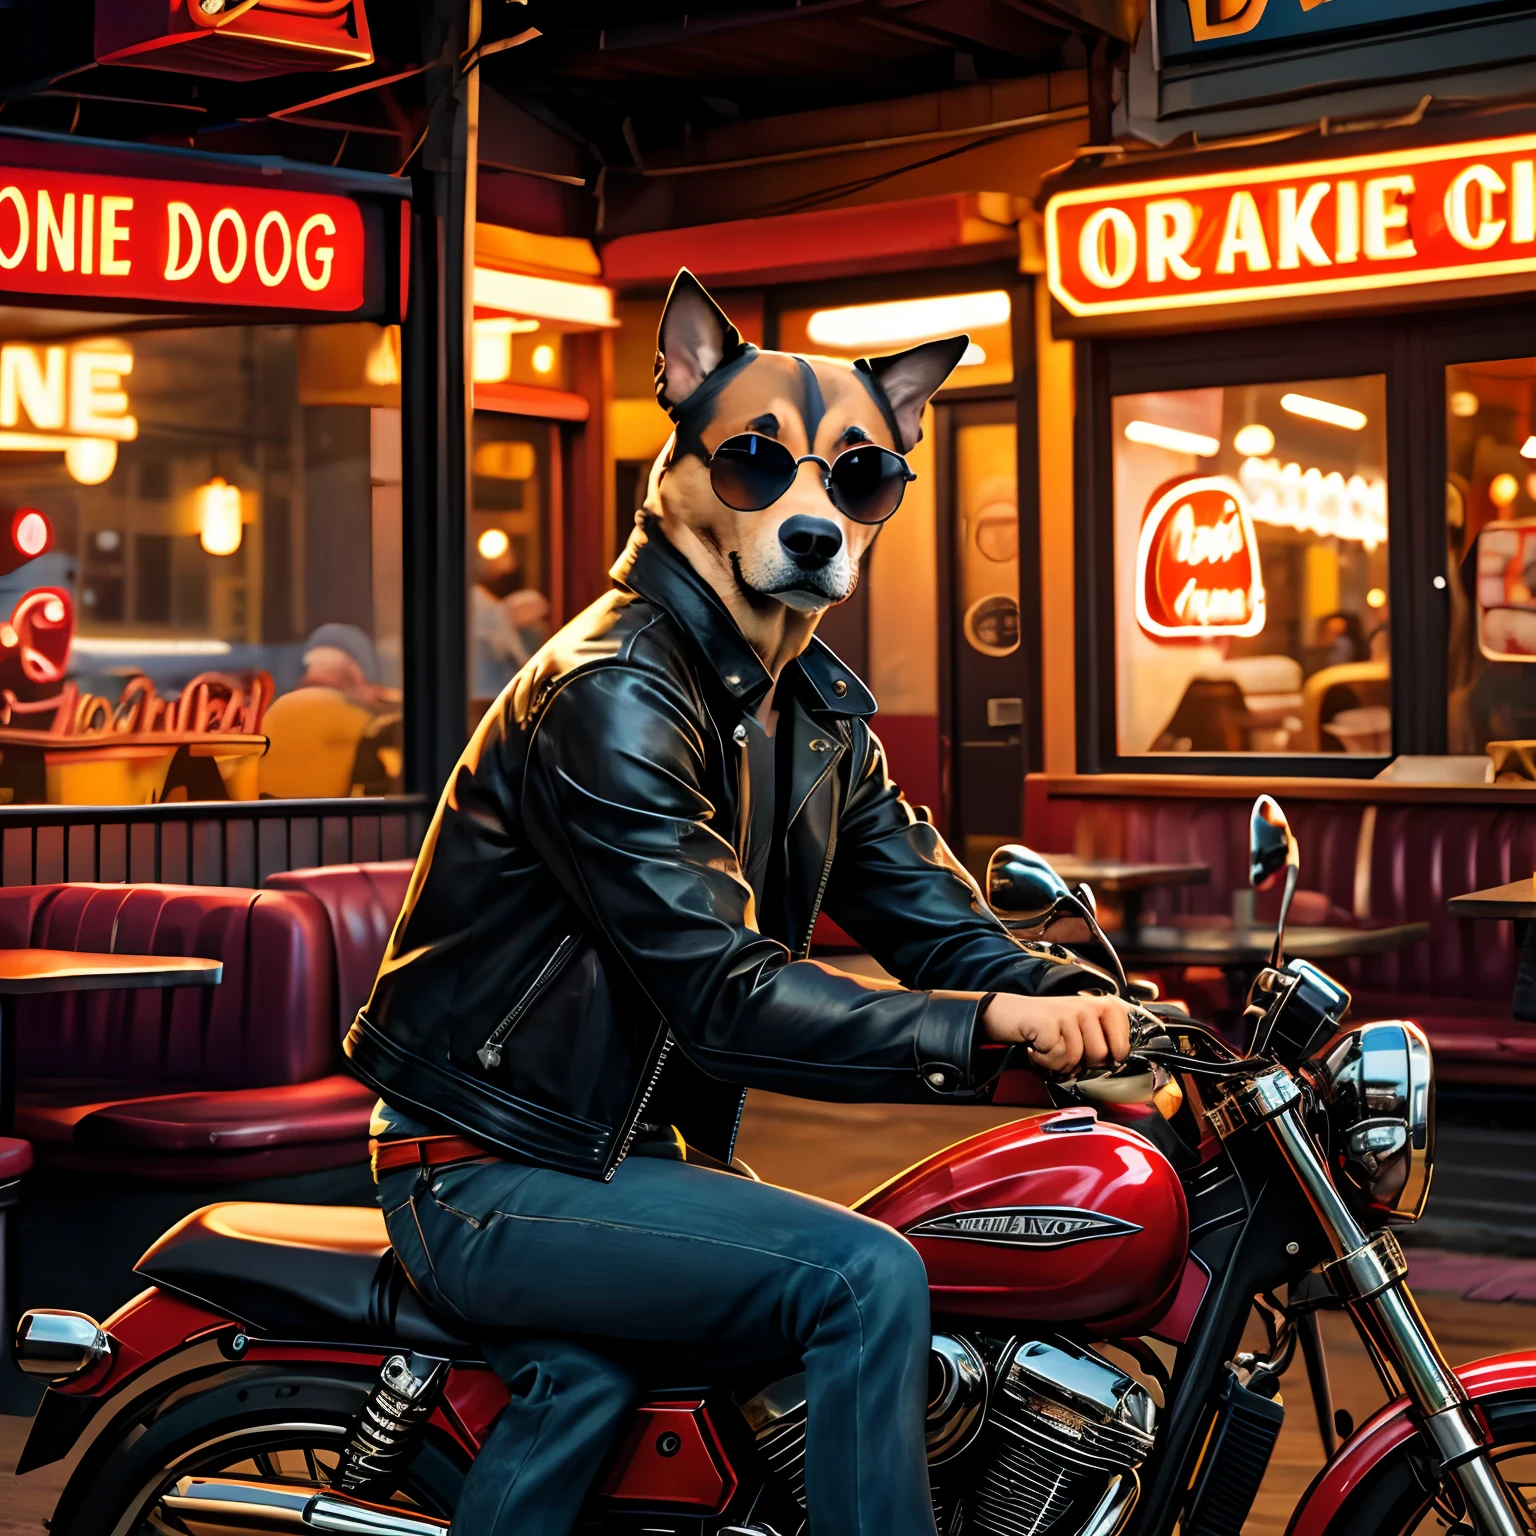 สร้างภาพของสุนัขที่สวมแจ็คเก็ตหนังและแว่นกันแดด, นั่งอยู่บนรถจักรยานยนต์หน้าร้านอาหาร. สุนัขมีสีหน้าเศร้าและแสดงออก, ราวกับว่าเขากําลังรอคนที่ไม่เคยปรากฏตัว. ร้านอาหารมีป้ายไฟนีออนที่เขียนว่า "Port Alveridge". รูปภาพควรมีสไตล์ที่สมจริงและมีรายละเอียด, คล้ายกับภาพวาดของ Ivan Clarke, ศิลปินของสุนัข. ใช้สีที่อบอุ่นและสดใสเพื่อตัดกับอารมณ์ของสุนัข.